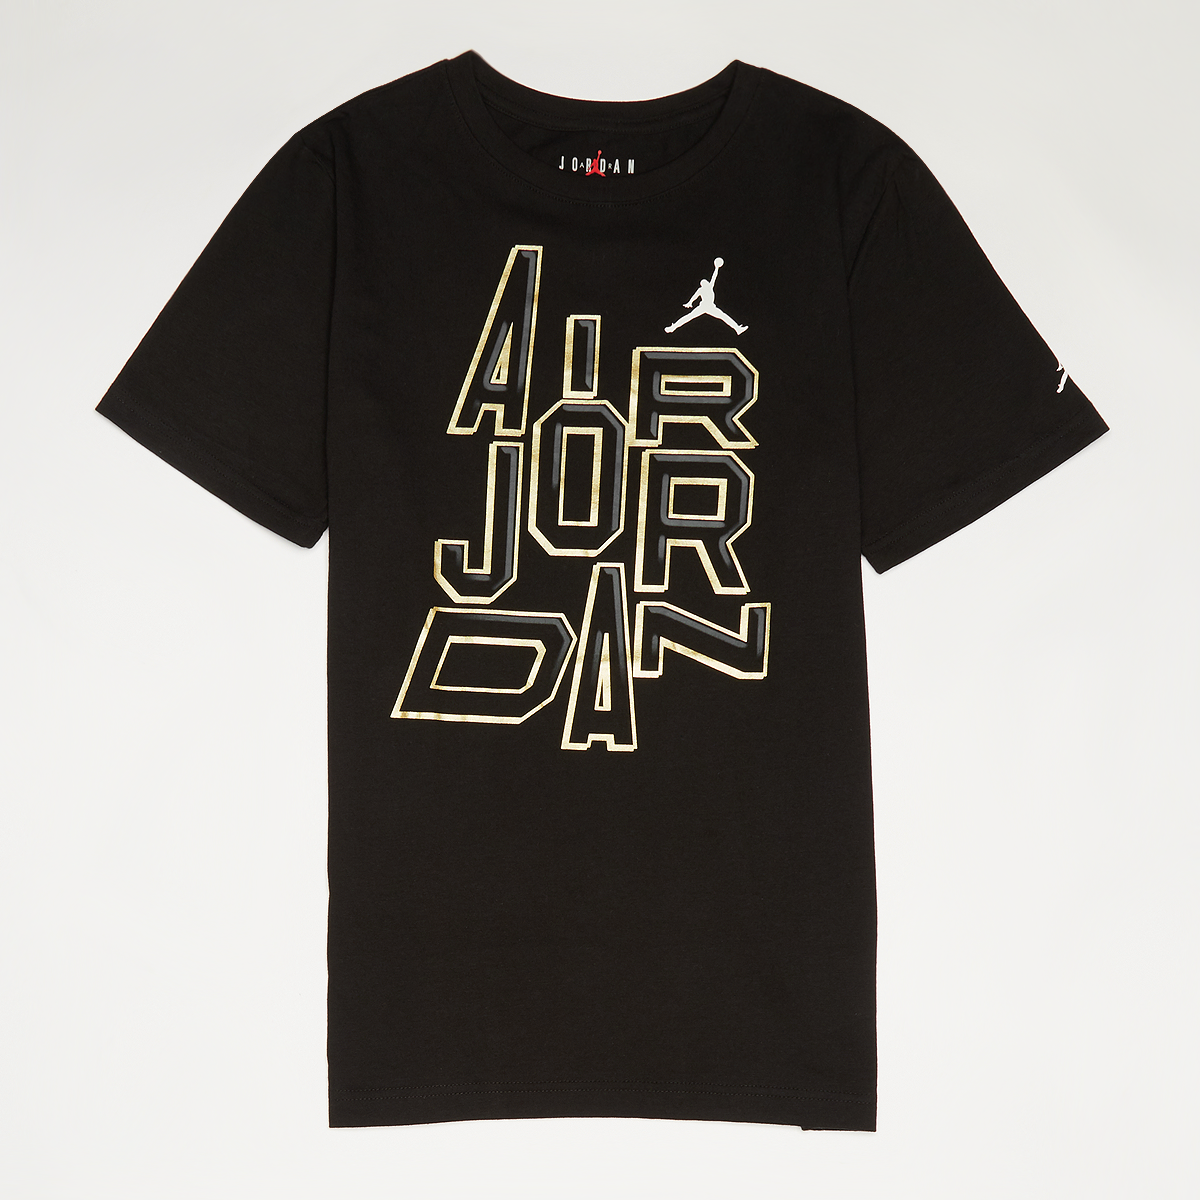 Jordan 23 Gold Line S s Tee T-shirts Kids Black maat: 128 beschikbare maaten:128 147 158 170